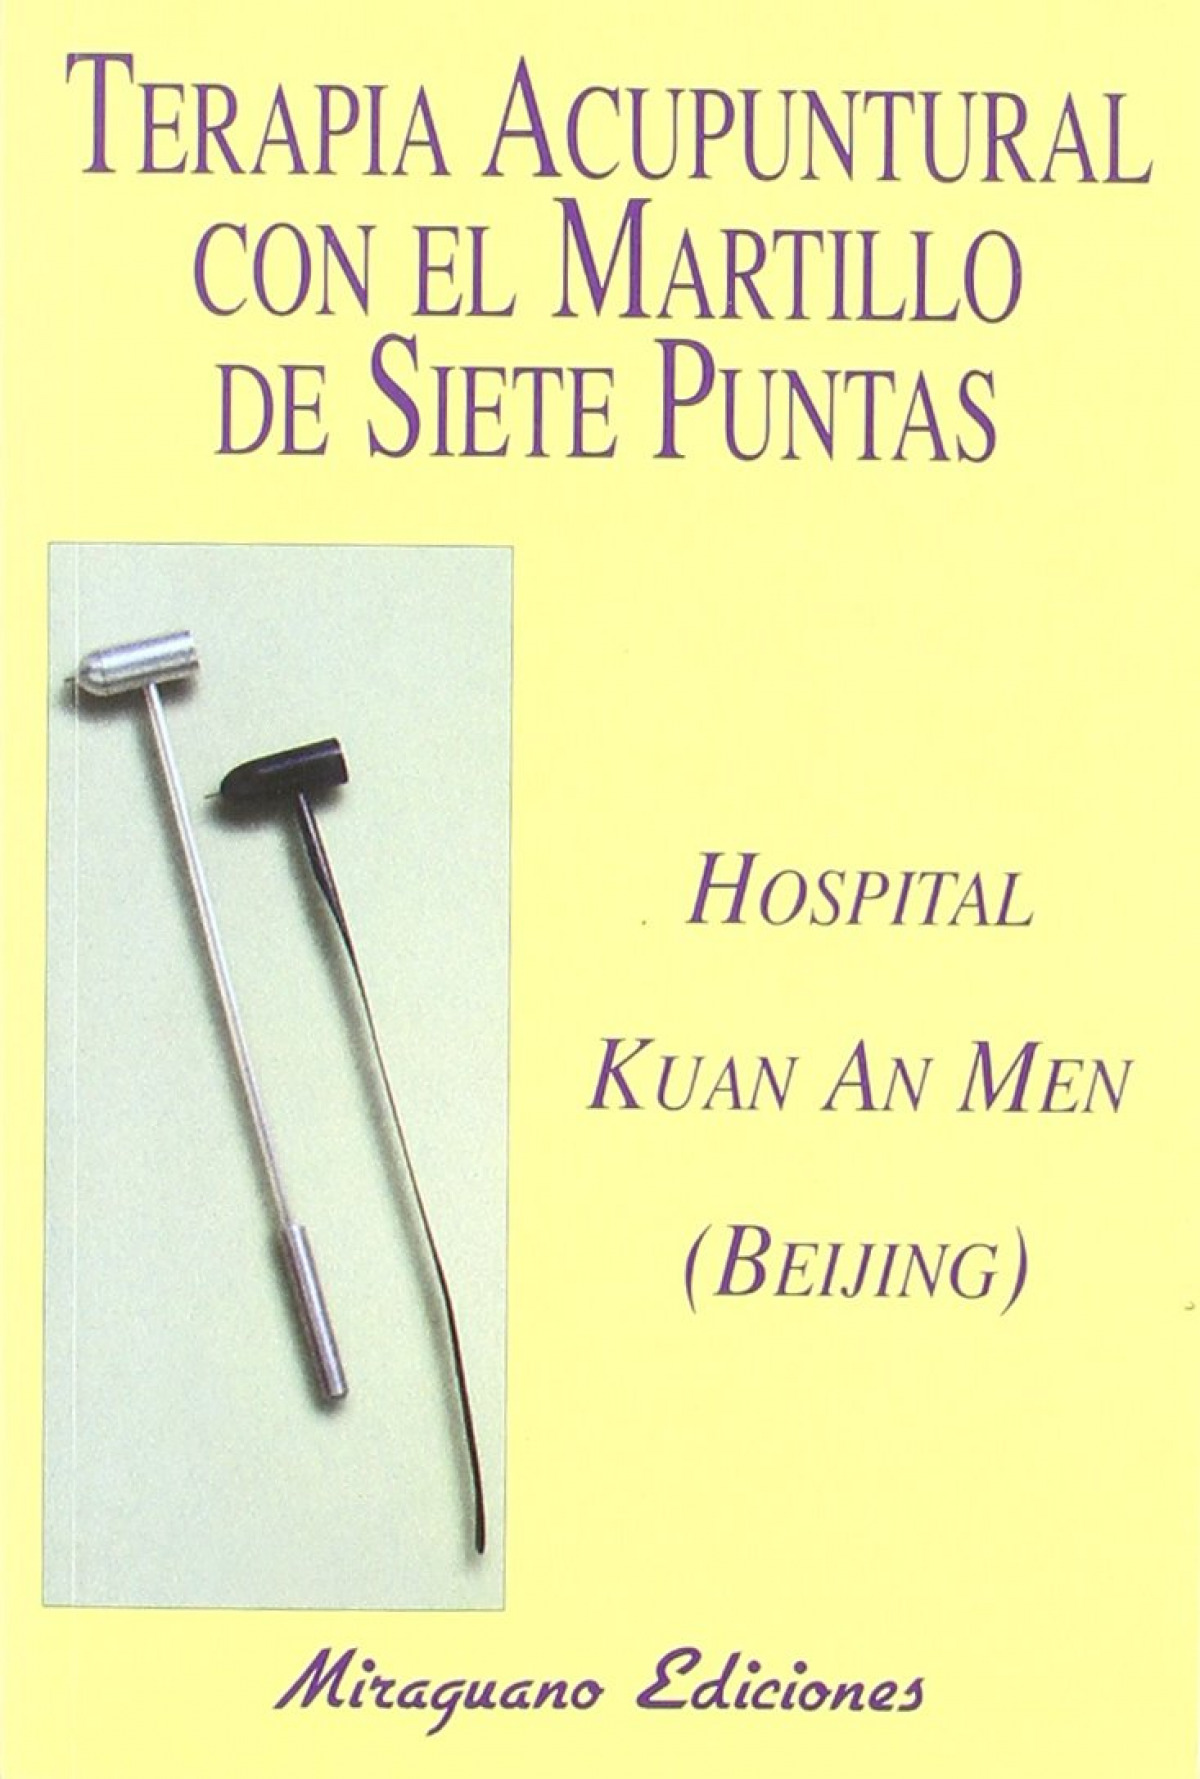 Terapia acupuntural con el martillo de siete puntas - Hospital Kuan An Men